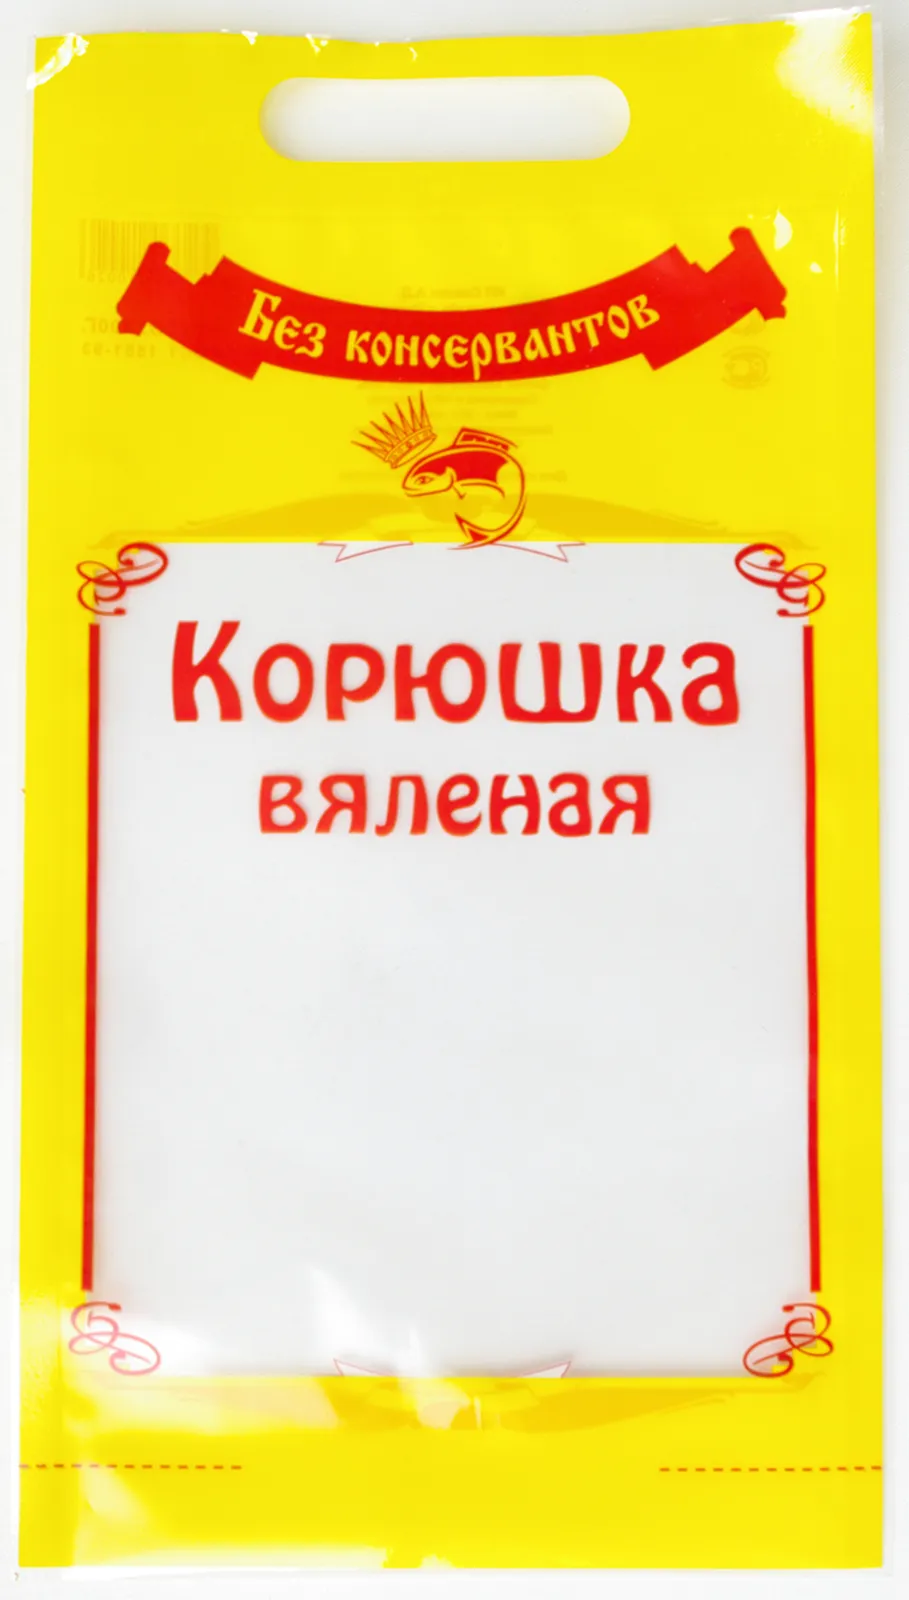 упаковка морепродуктов для розницы в Москве 2